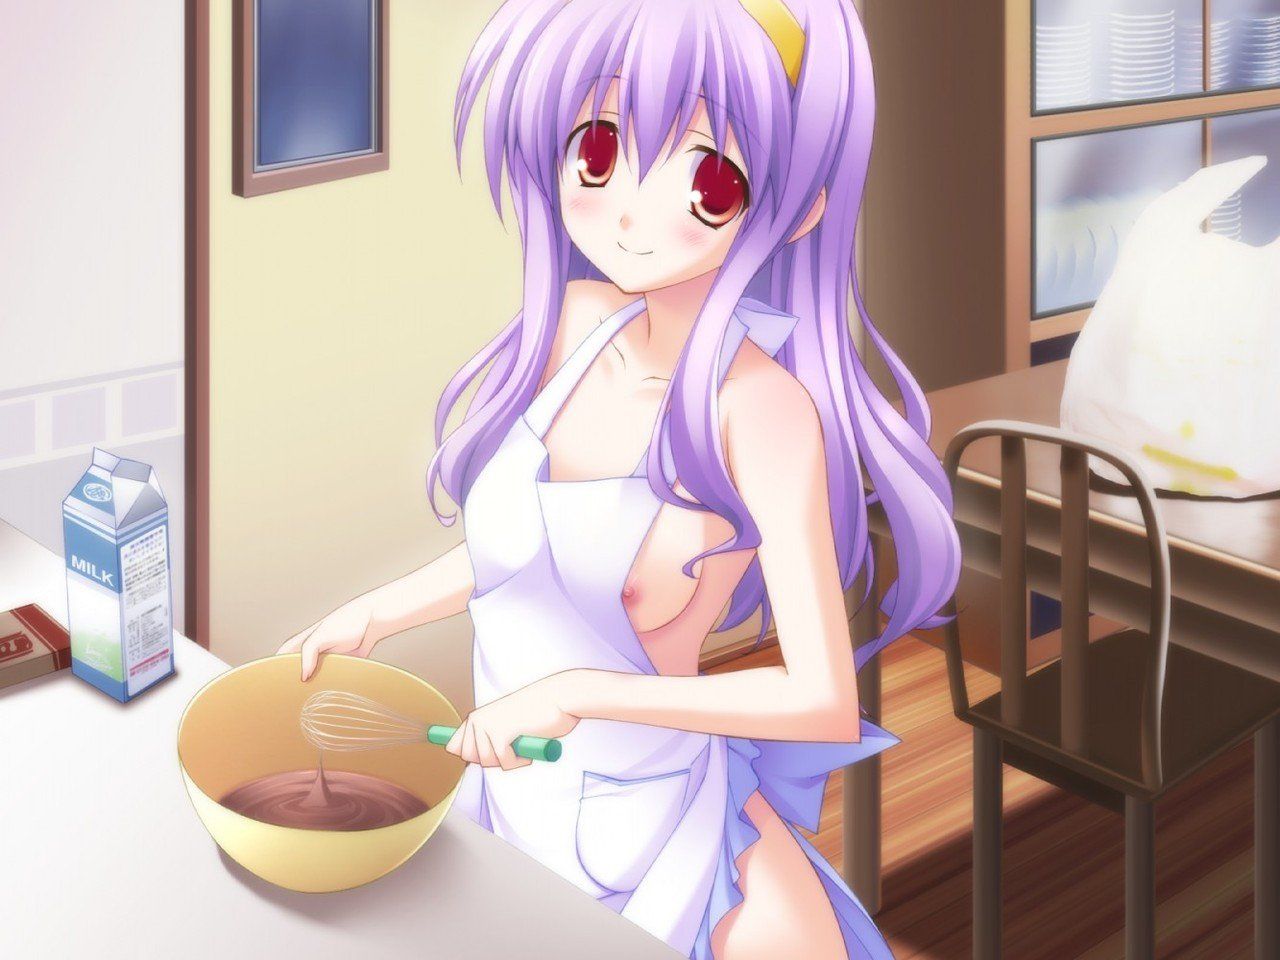 [2次] girl secondary erotic pictures of naked apron before rice want to eat me! 9 [naked apron] 29